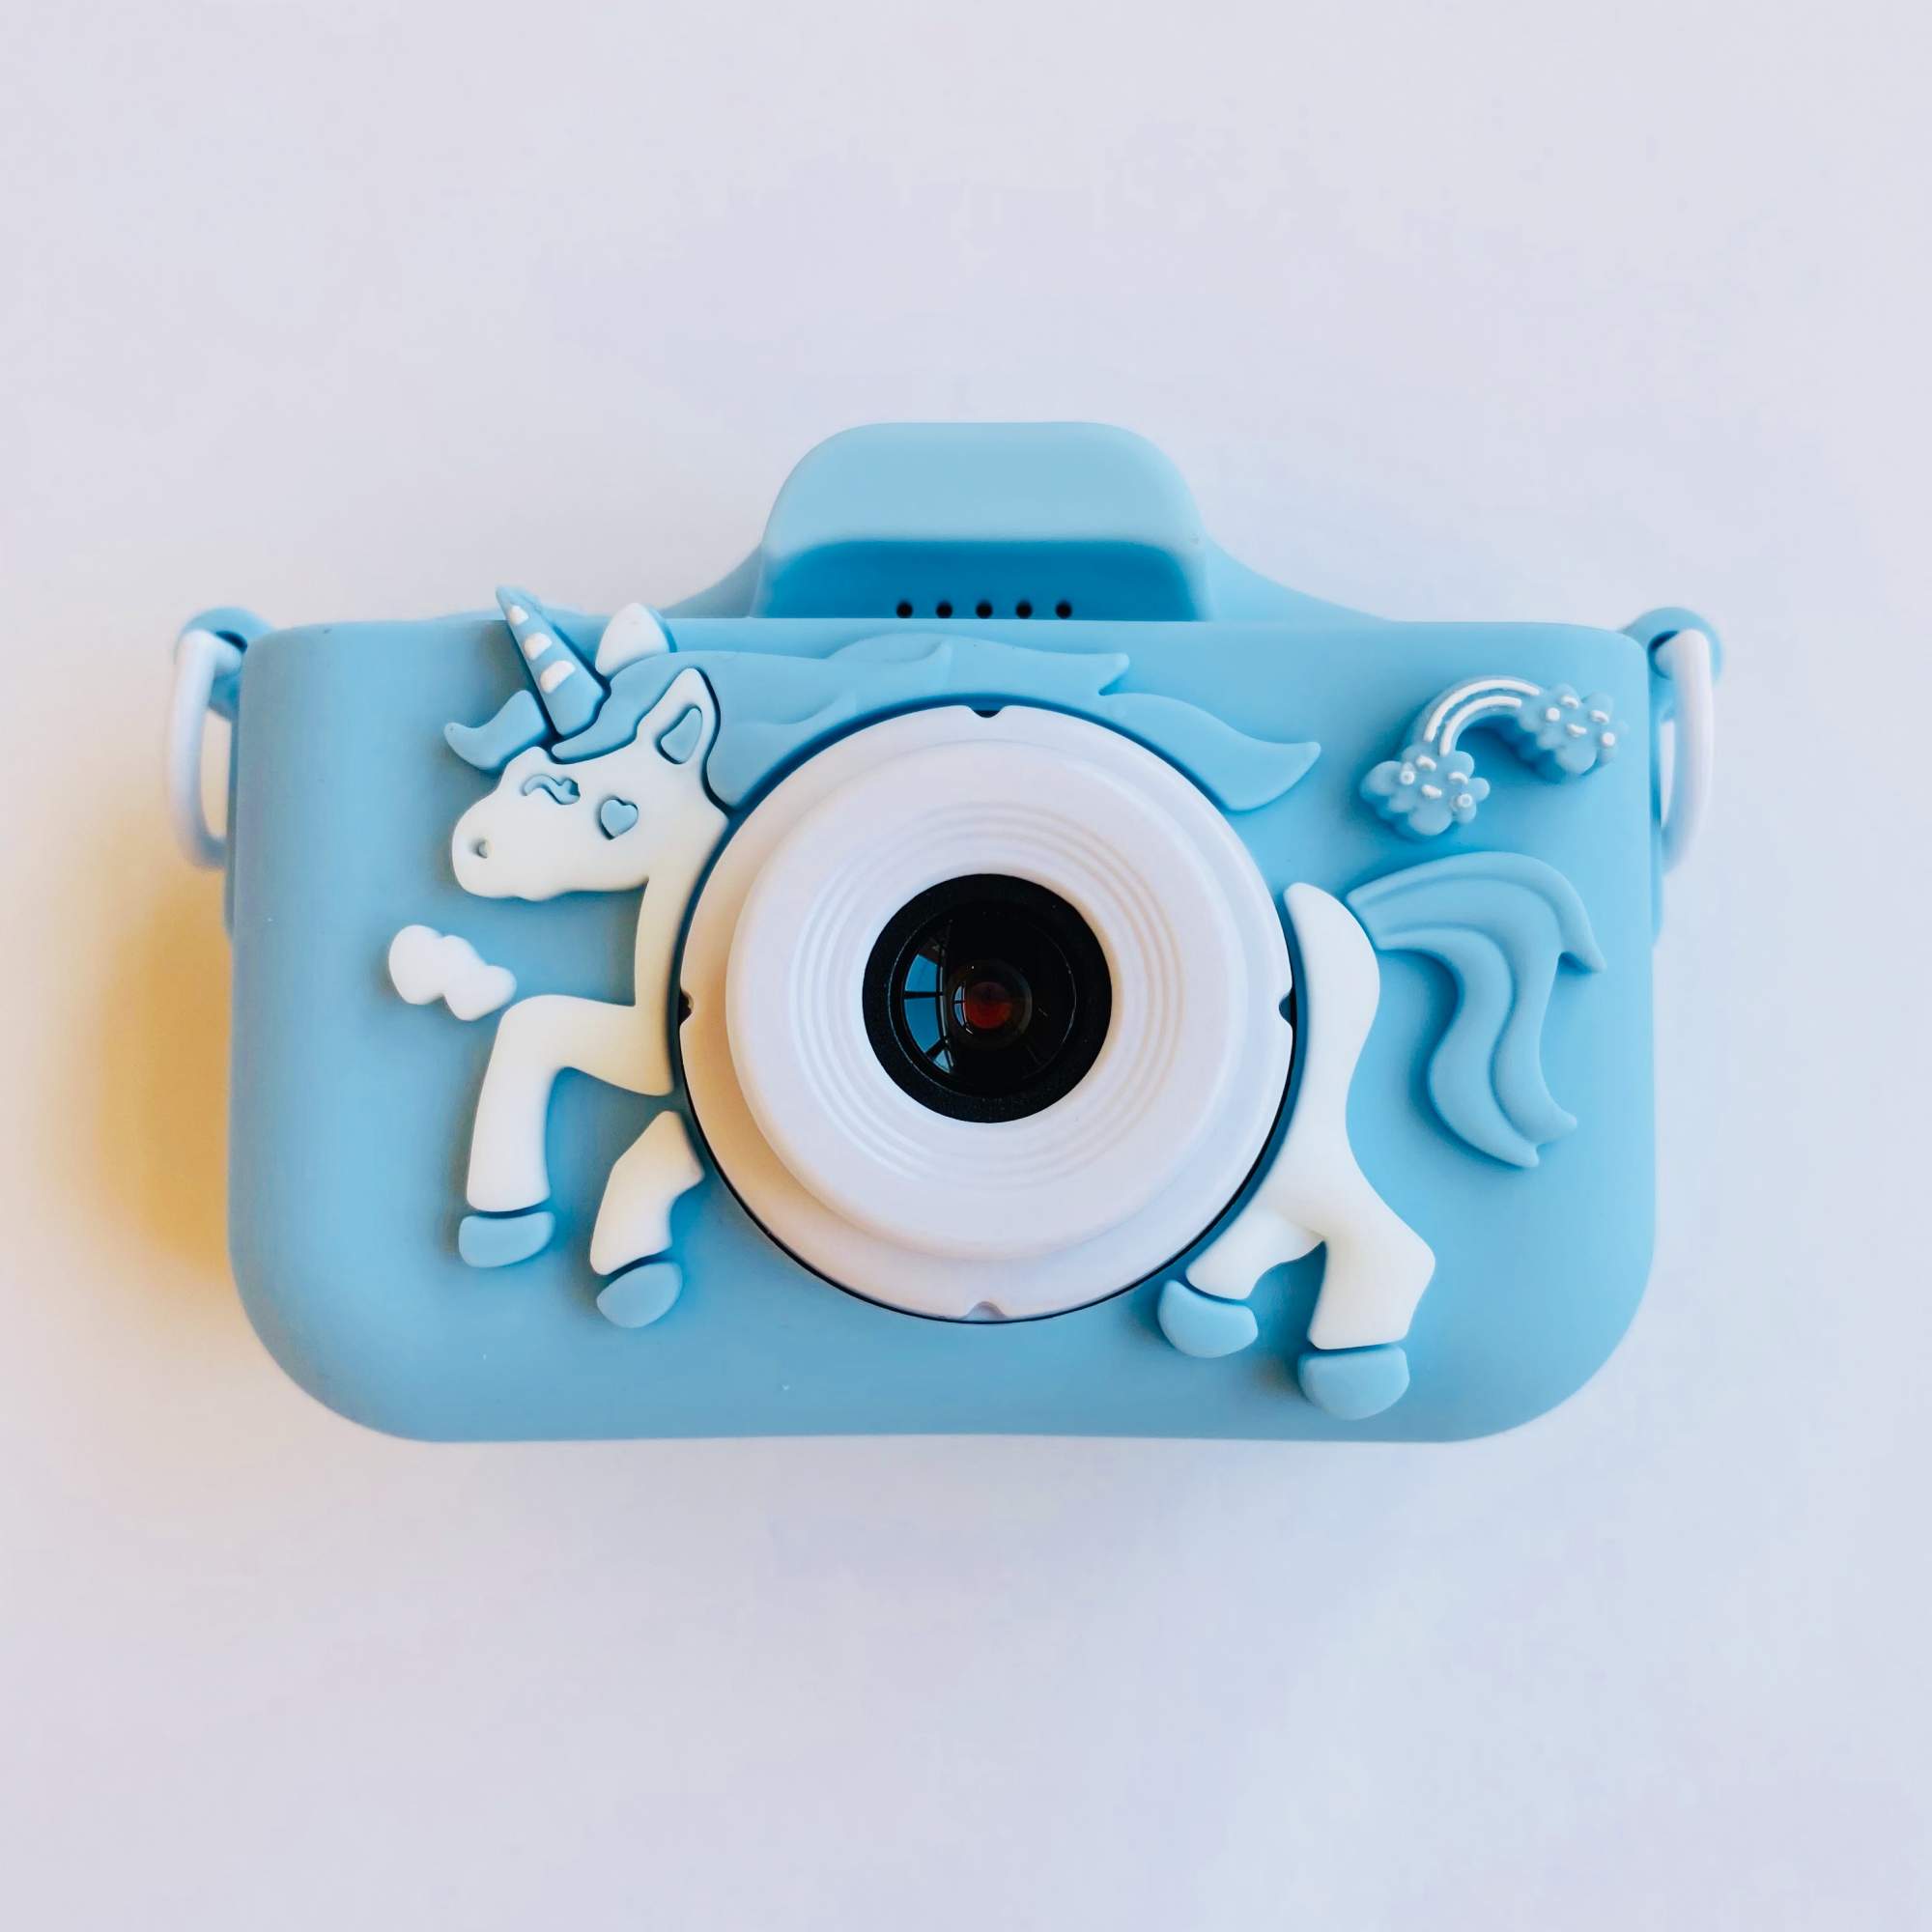 Детский цифровой фотоаппарат 48Mpx с играми и селфи камерой для мальчика Единорог голубой тюбинг ника единорог с камерой 95 см